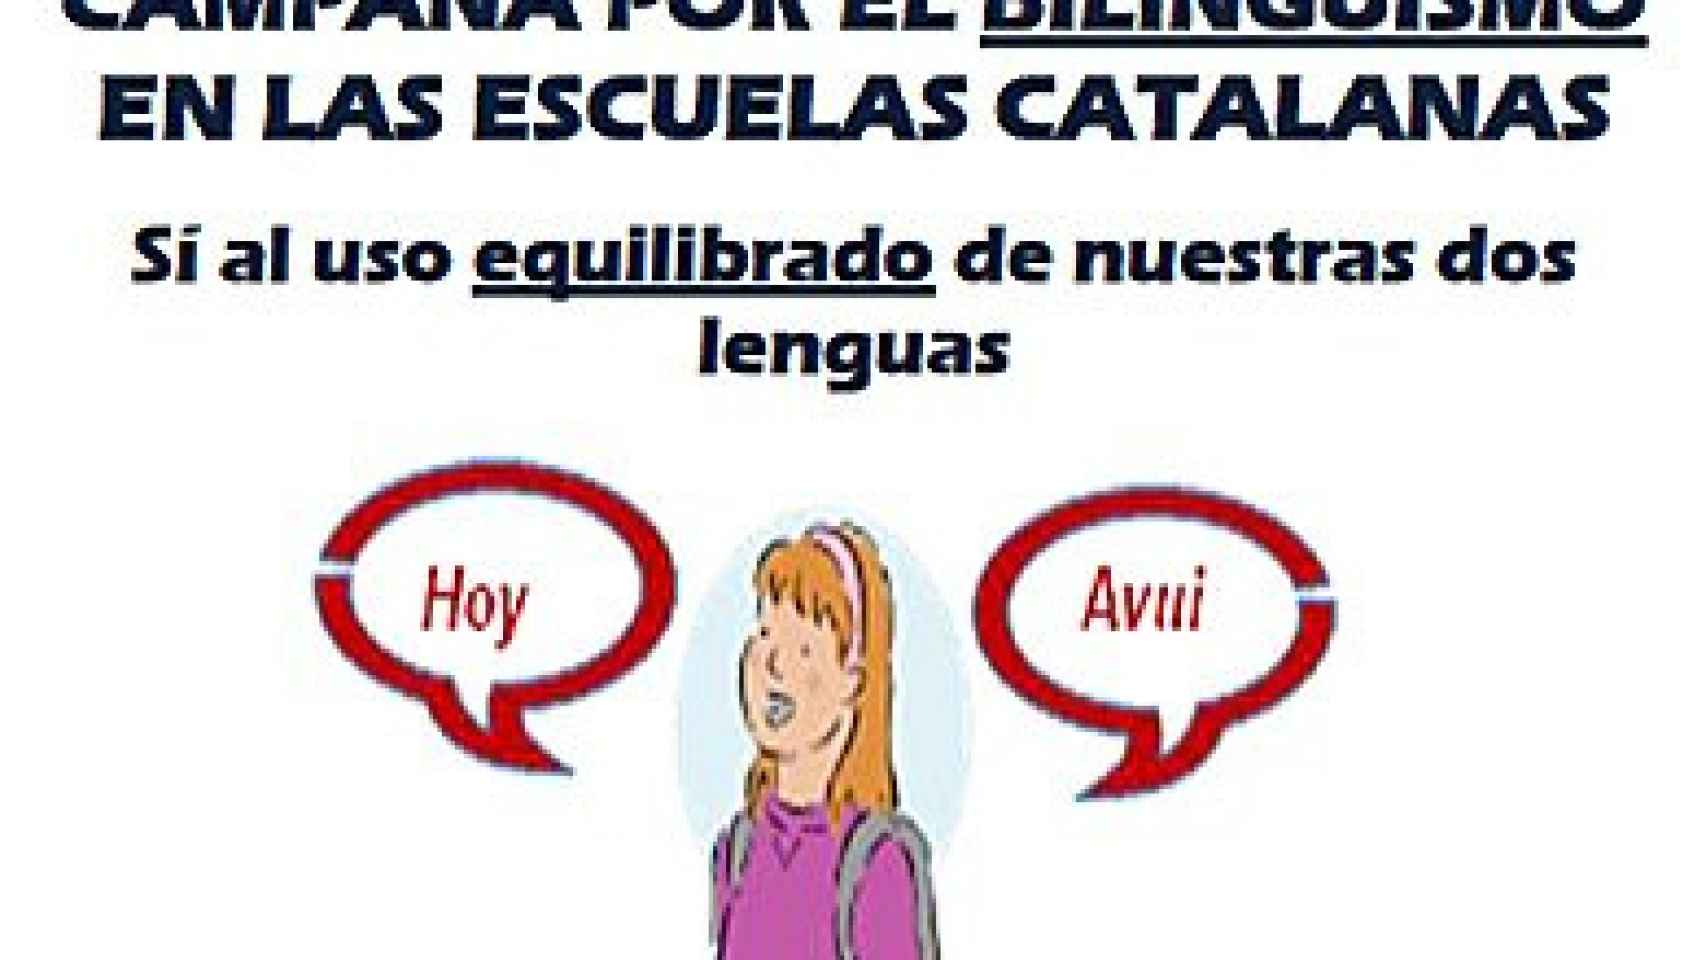 Campaña de Convivencia Cívica Catalana a favor del bilingüismo escolar